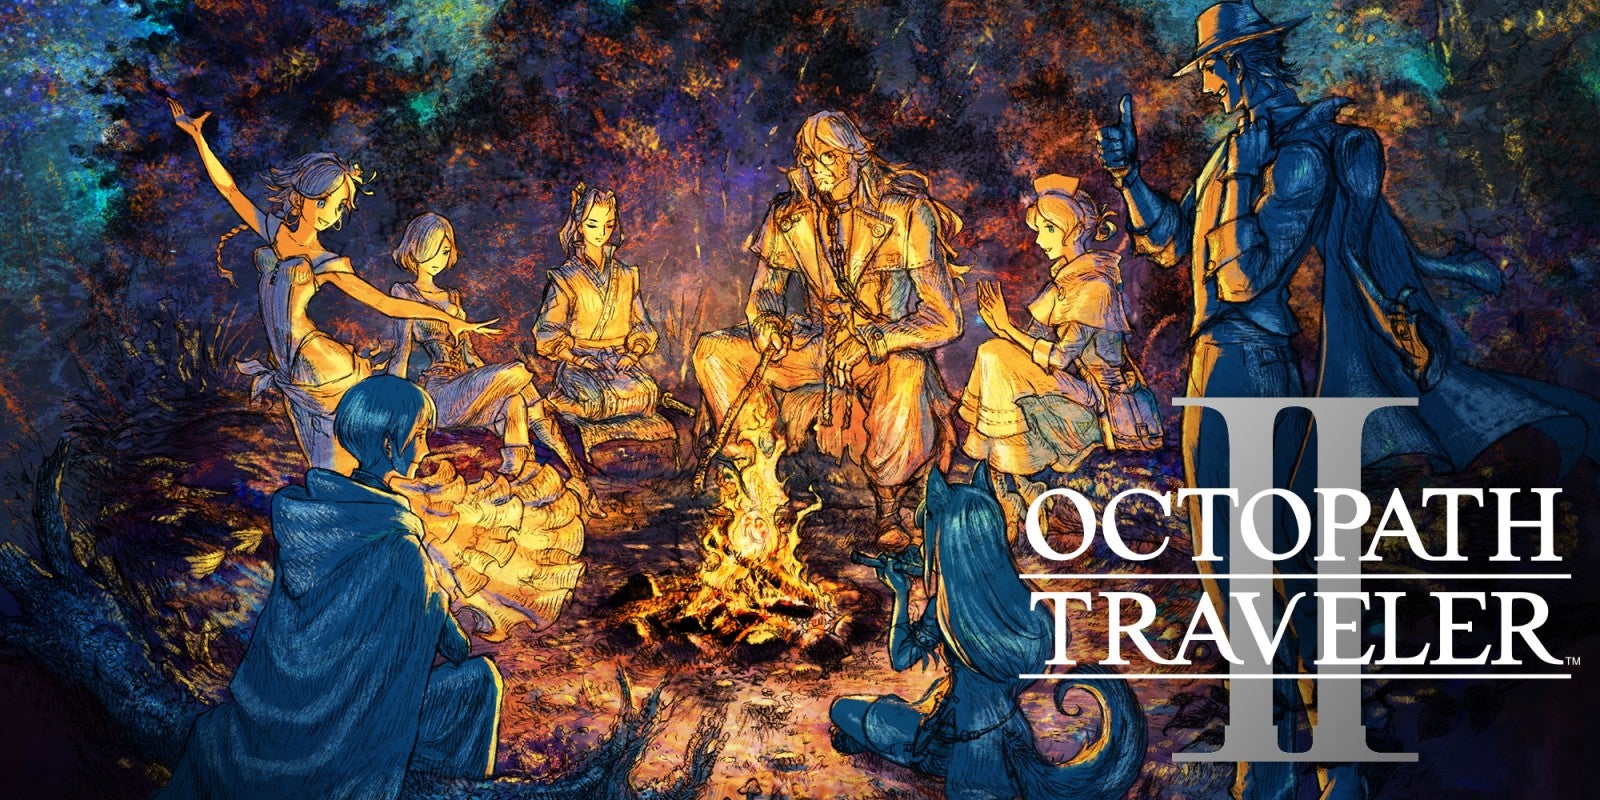 Imagem para Octopath Traveler II já tem demo disponível